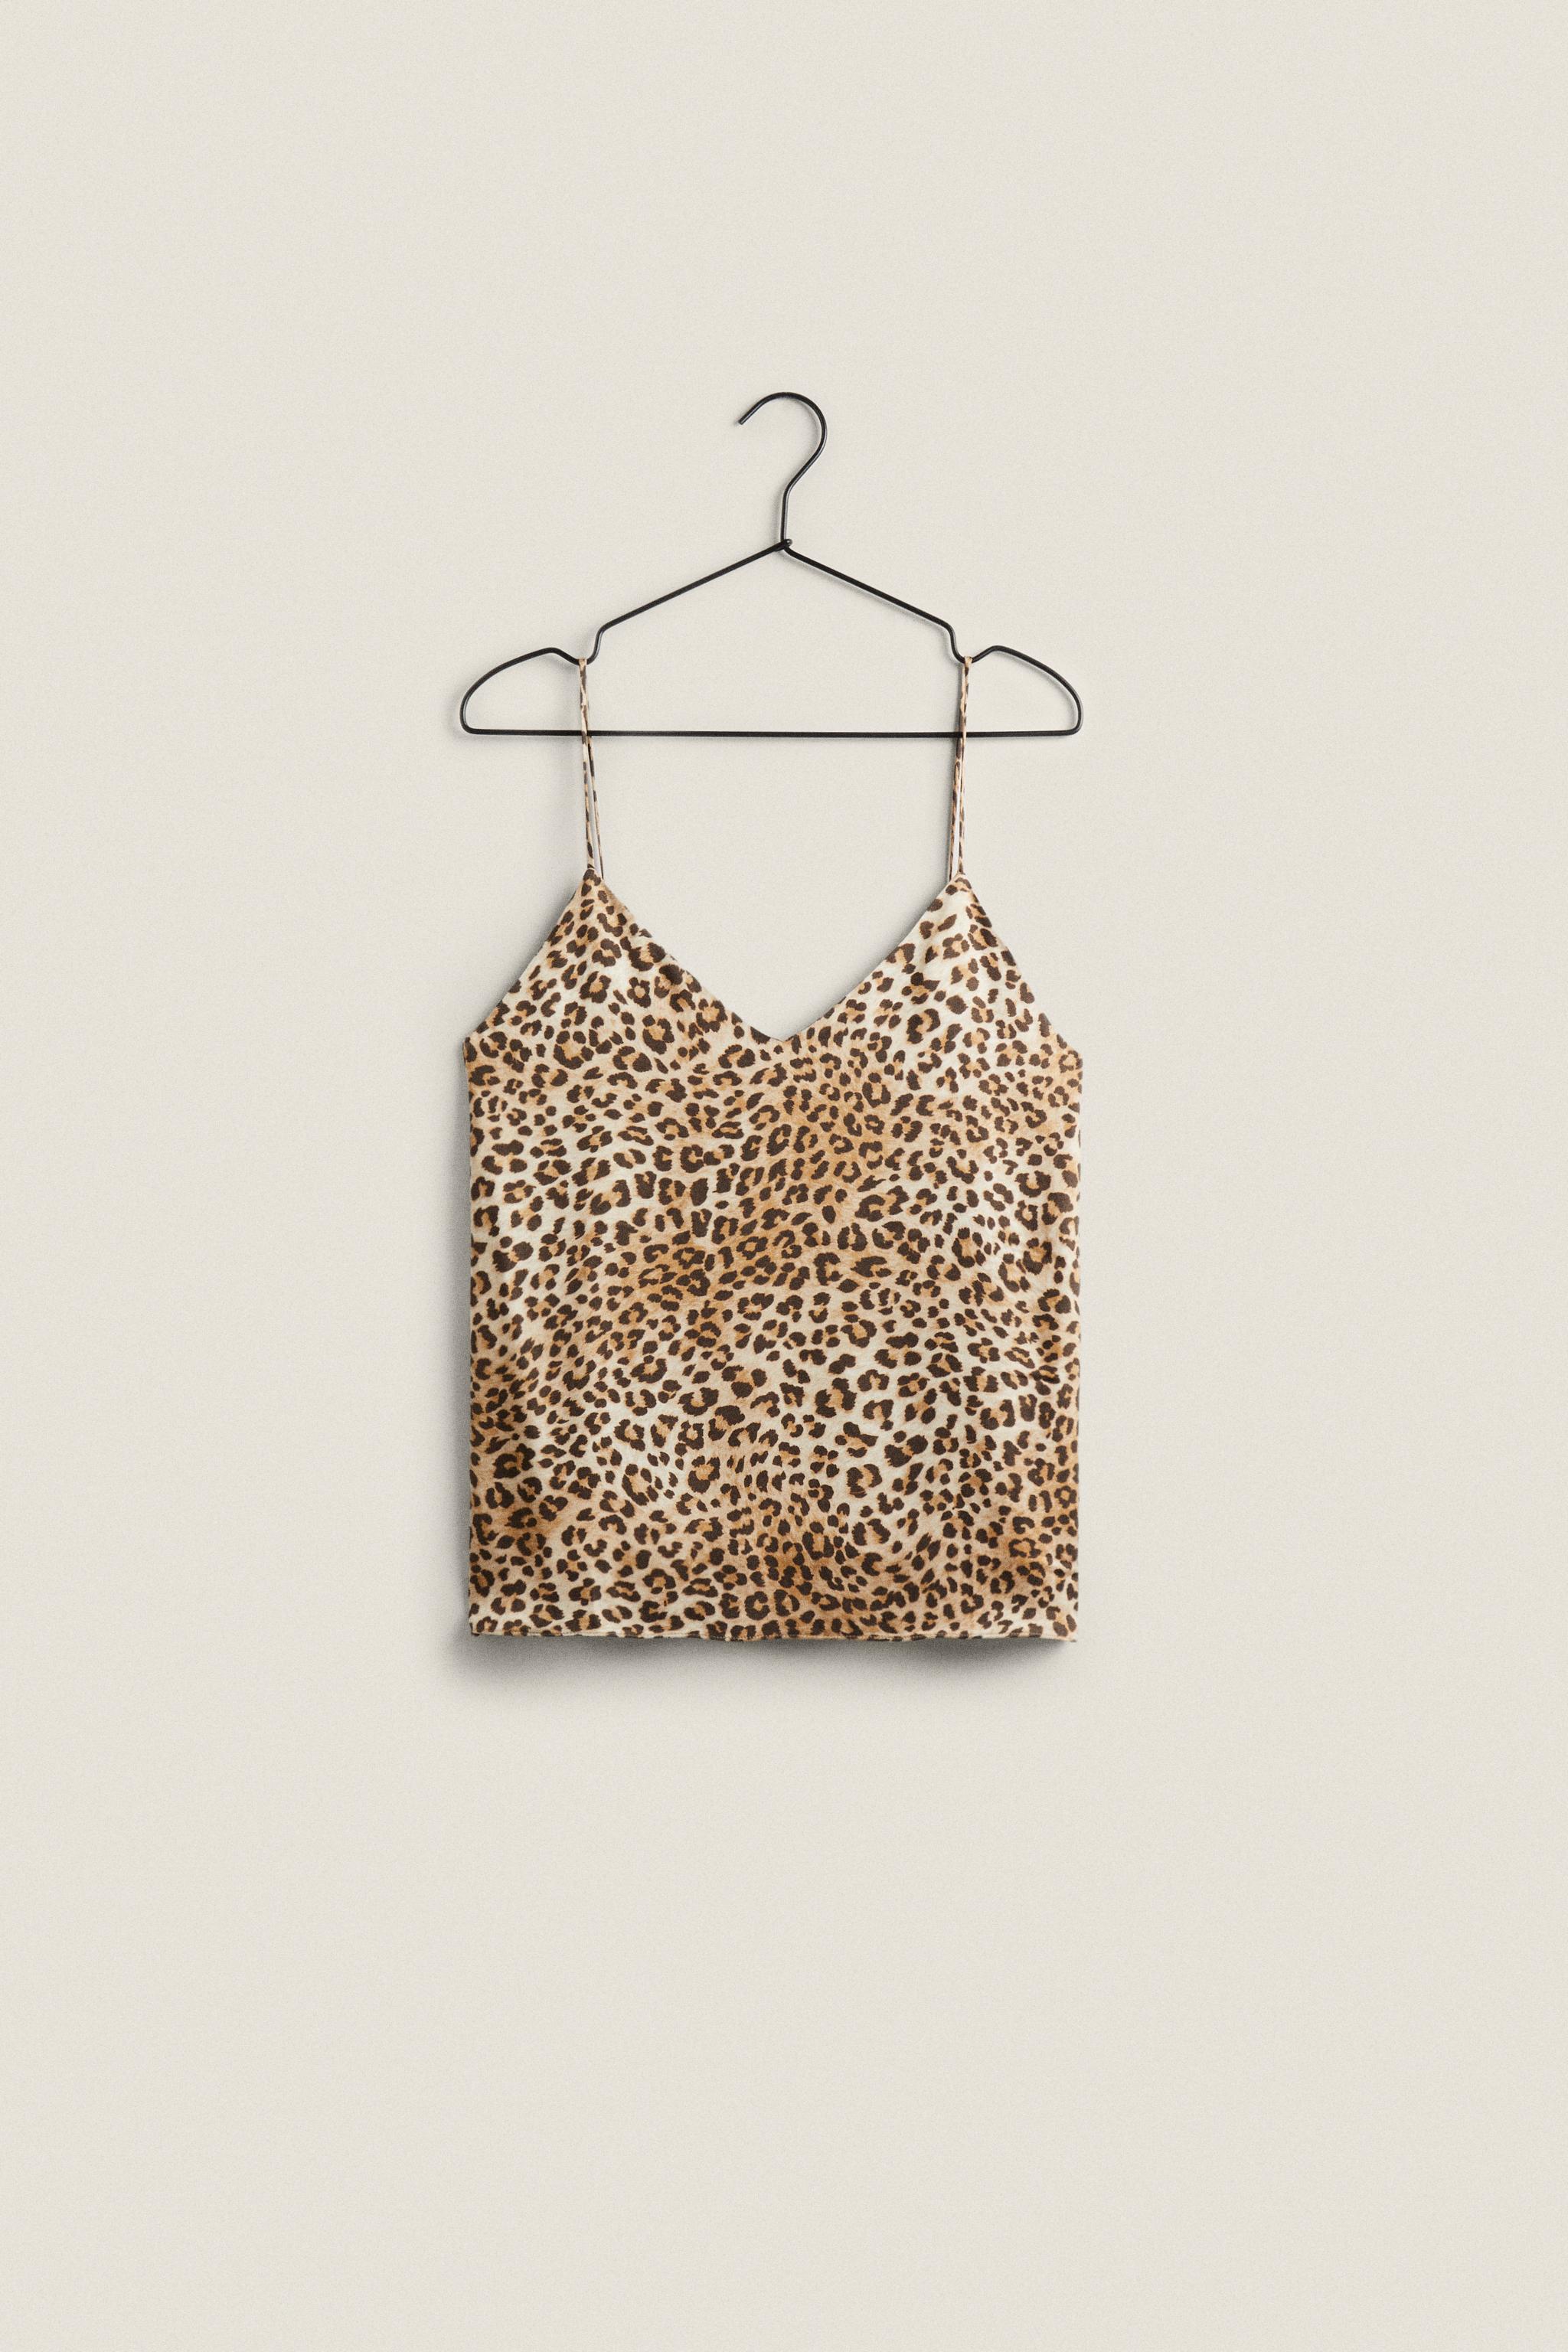 ZARA Leopard Lace Crop Top